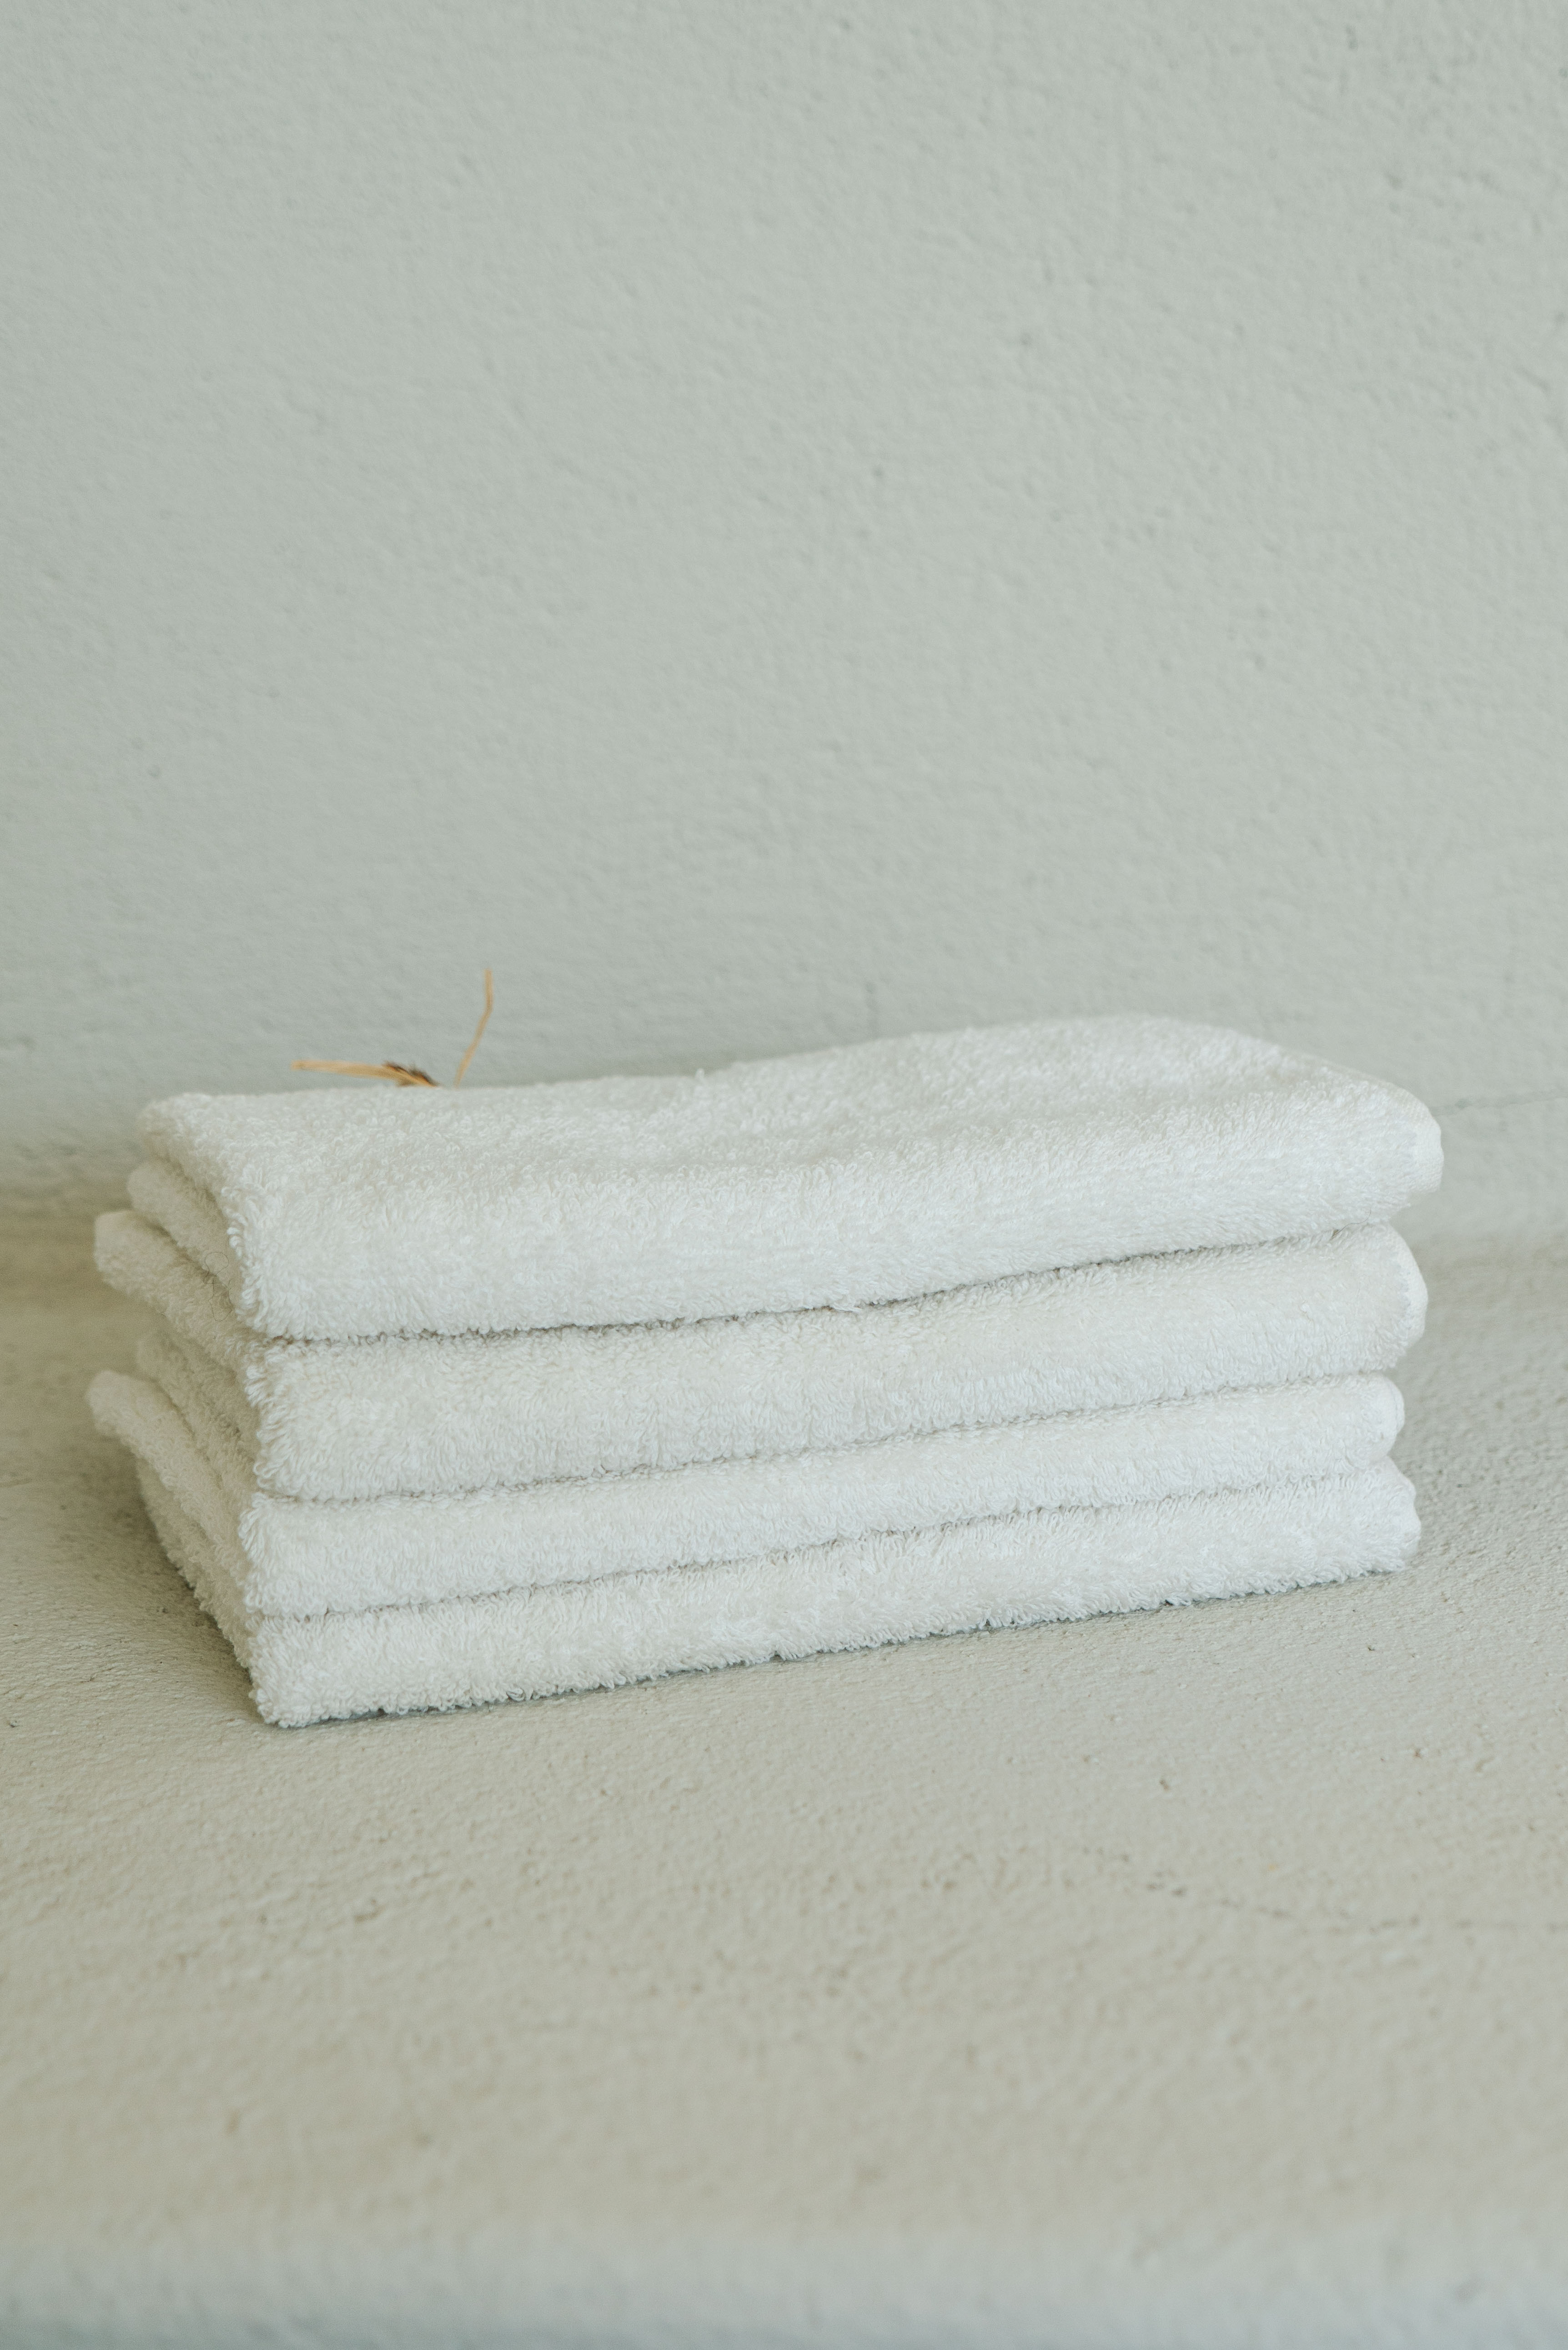 Cotton towel / S, M